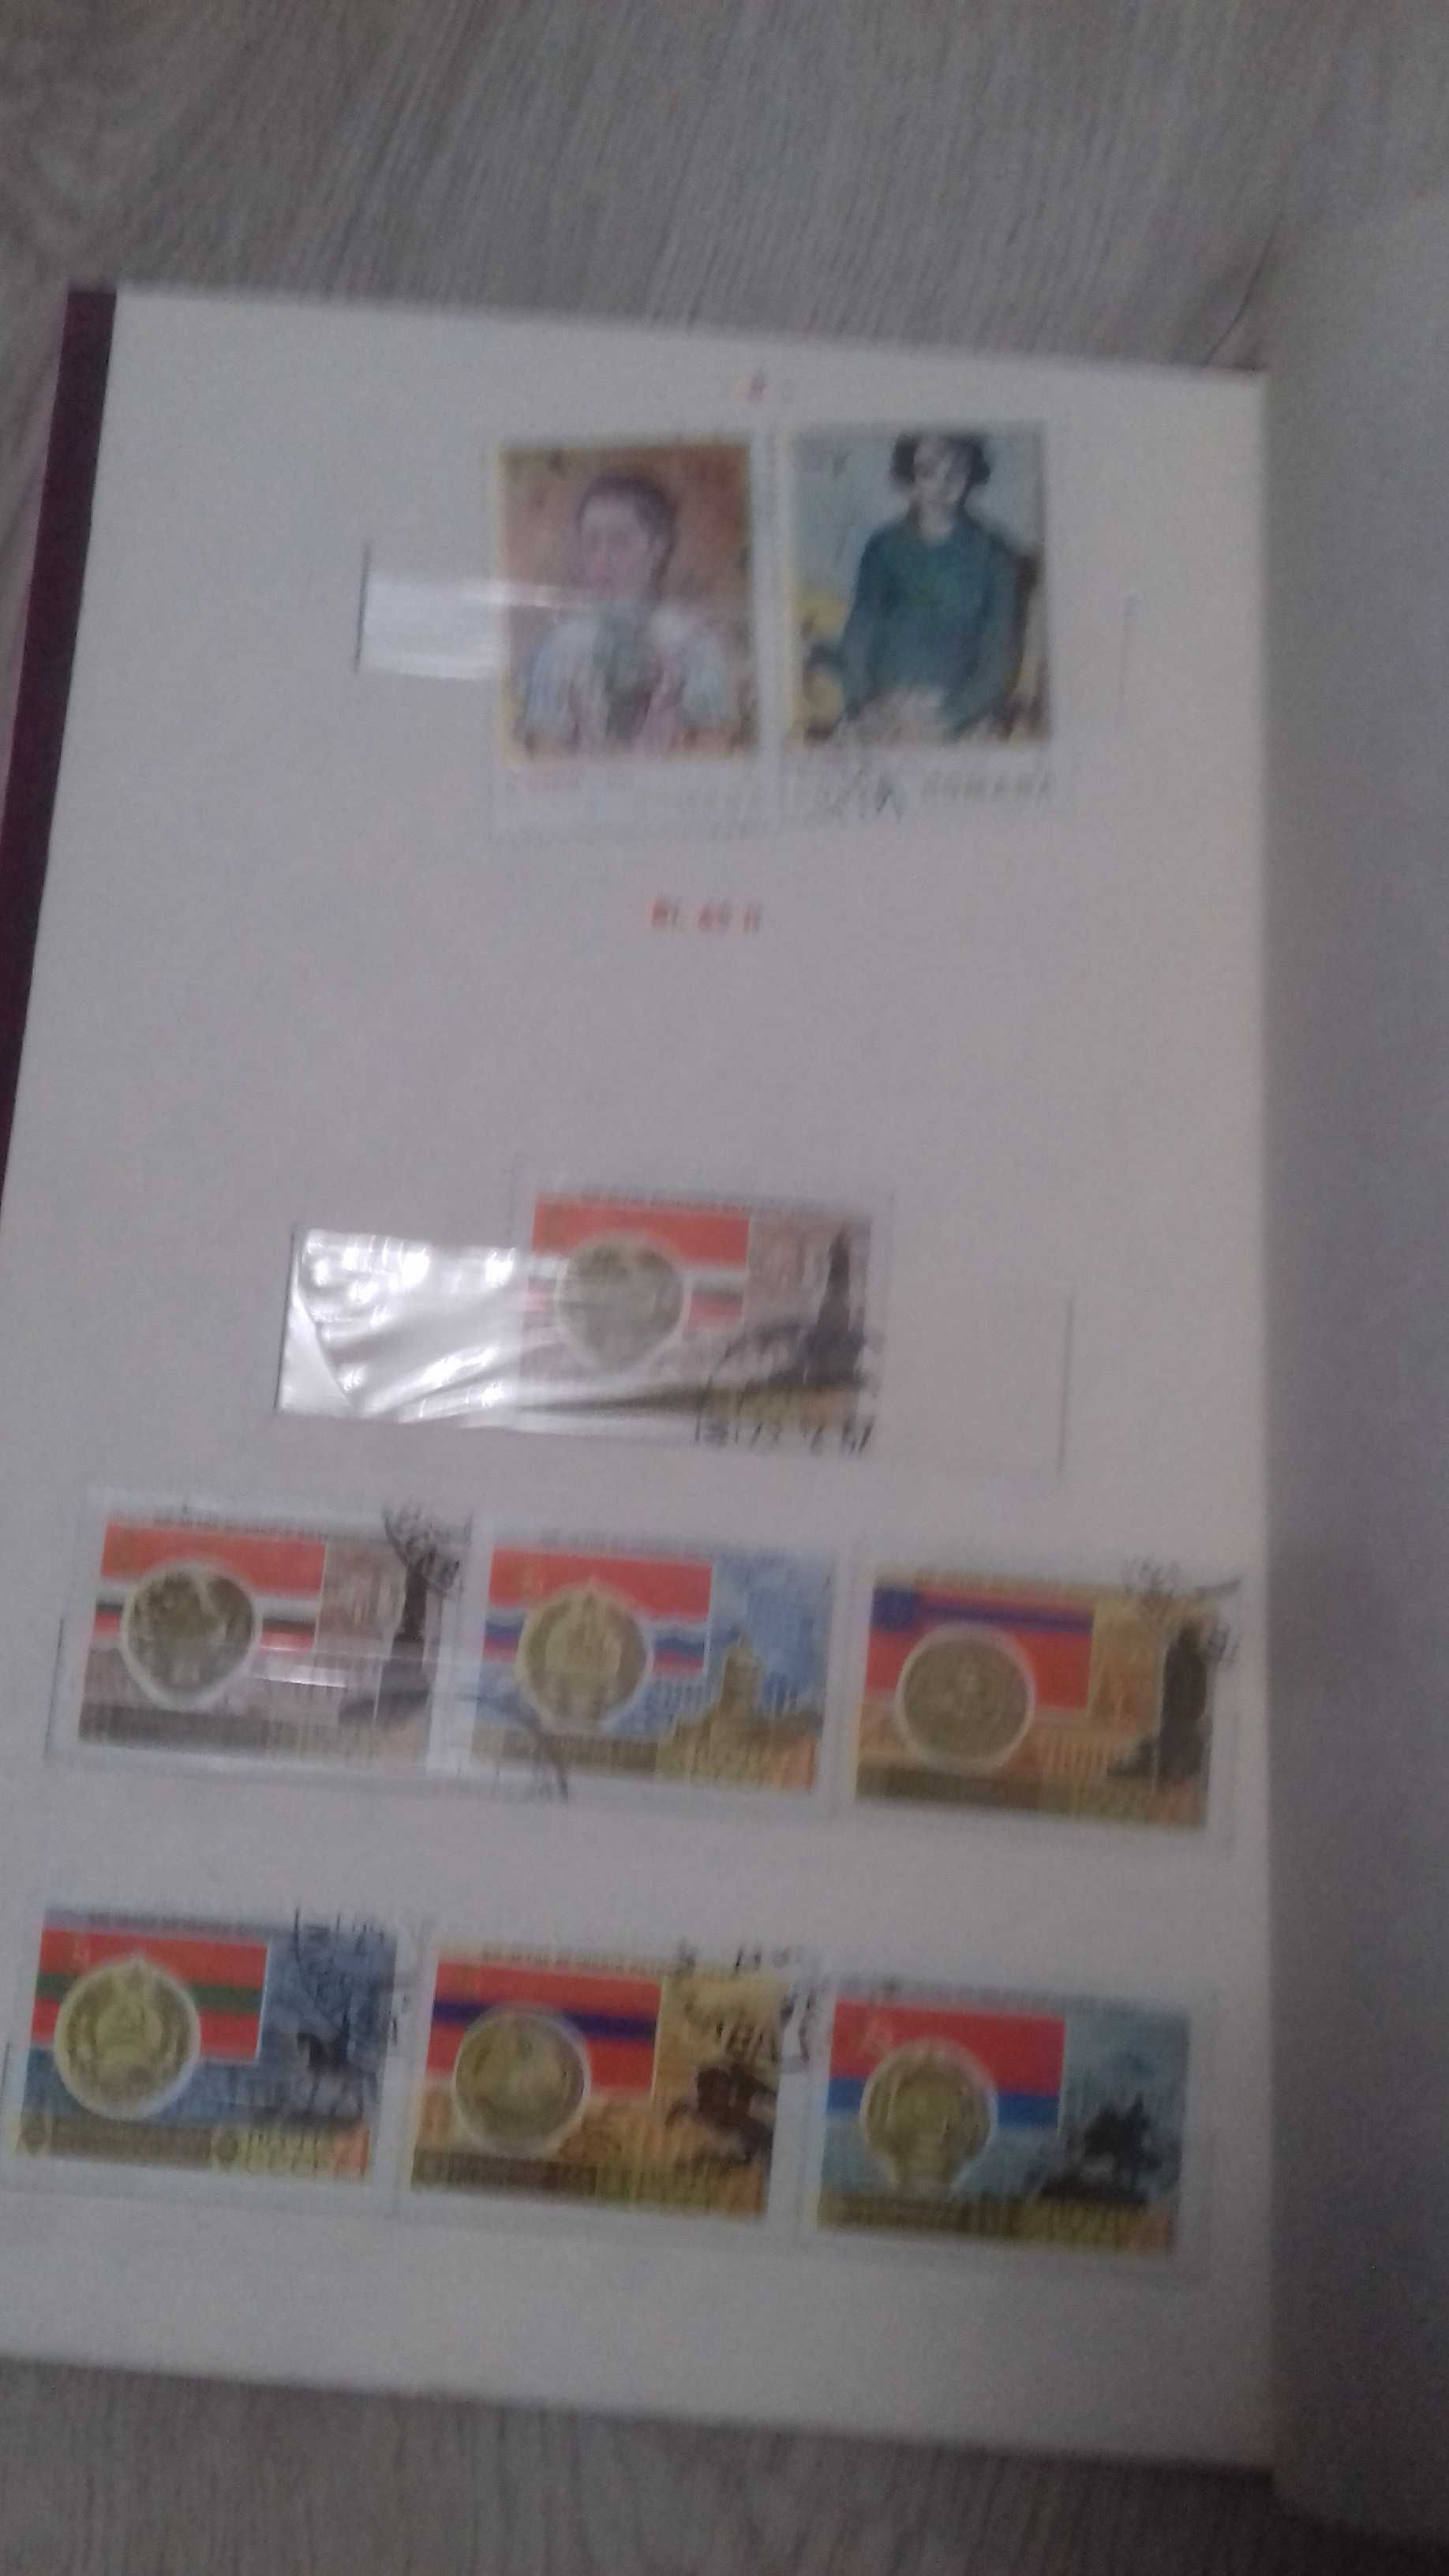 Znaczki pocztowe z prl polska ludowa